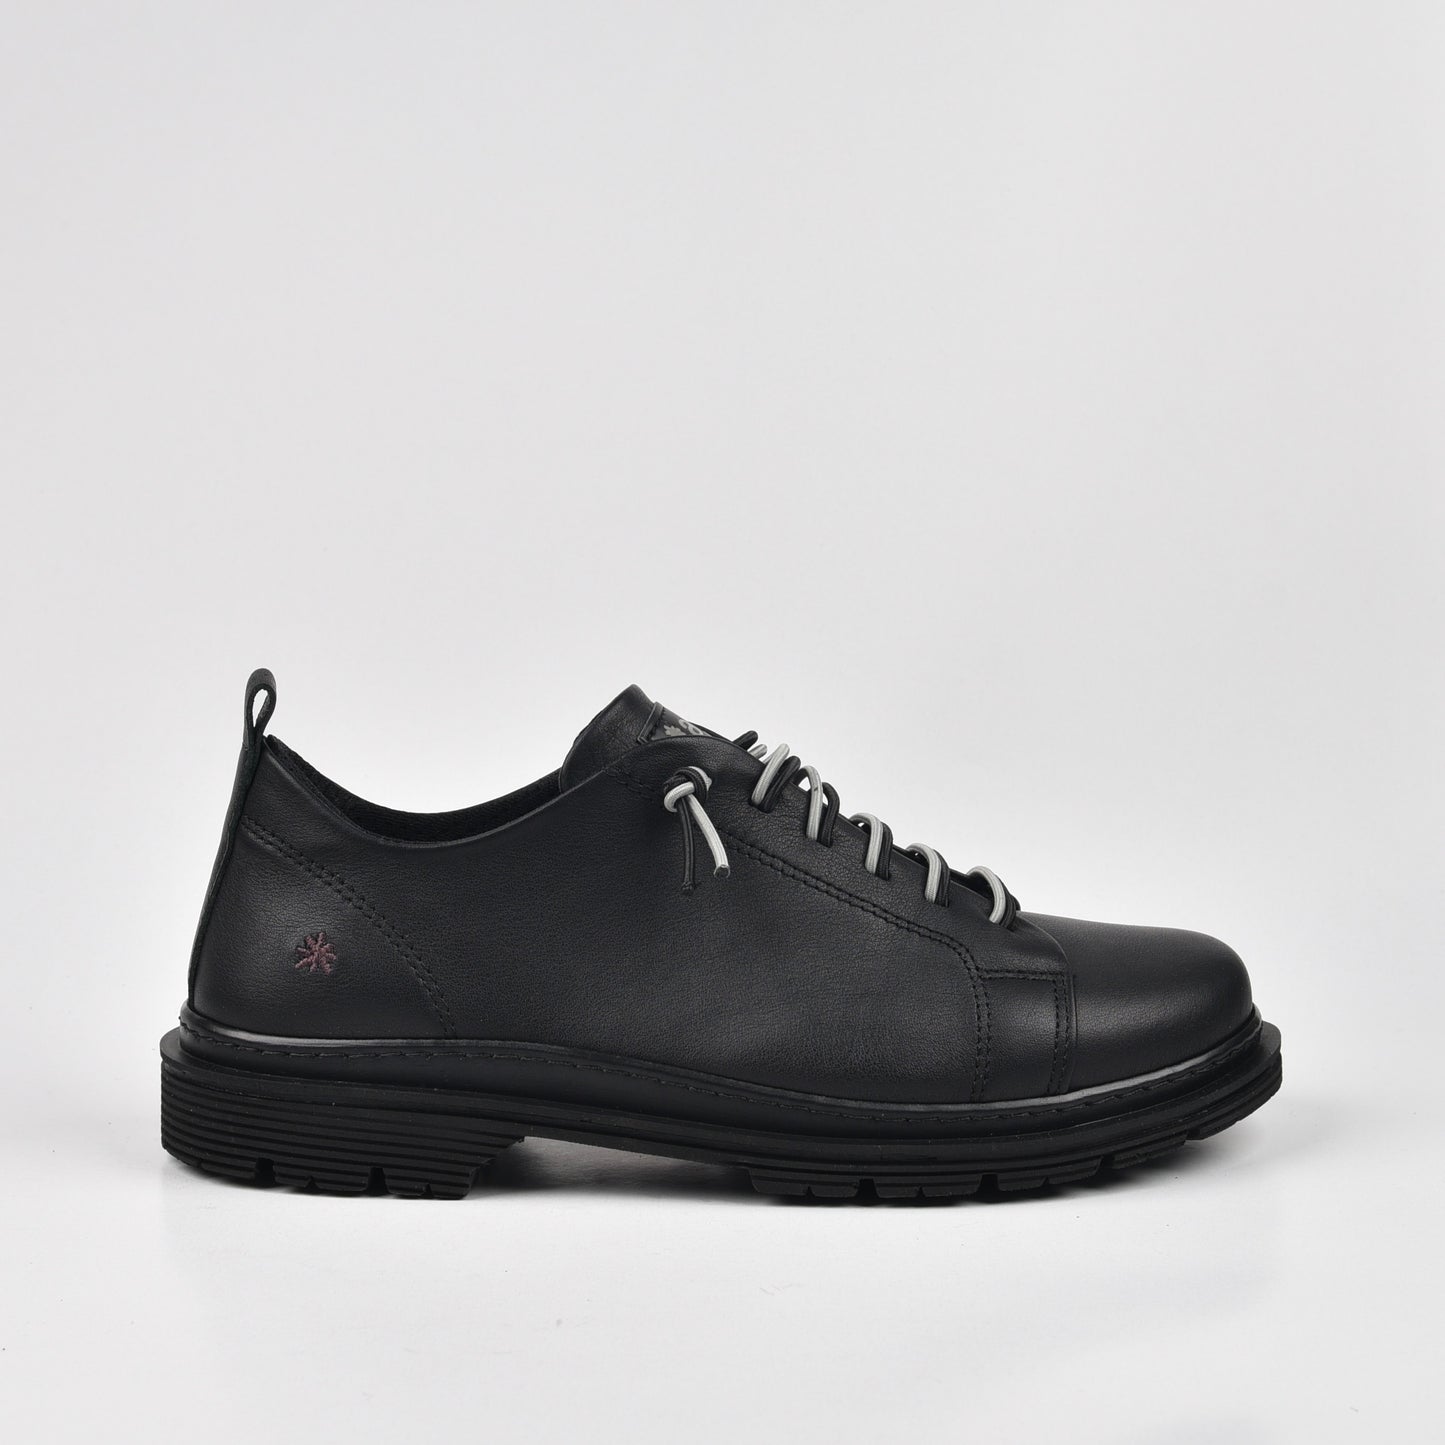 Art Spanish sneakers for Men in Napa Black.